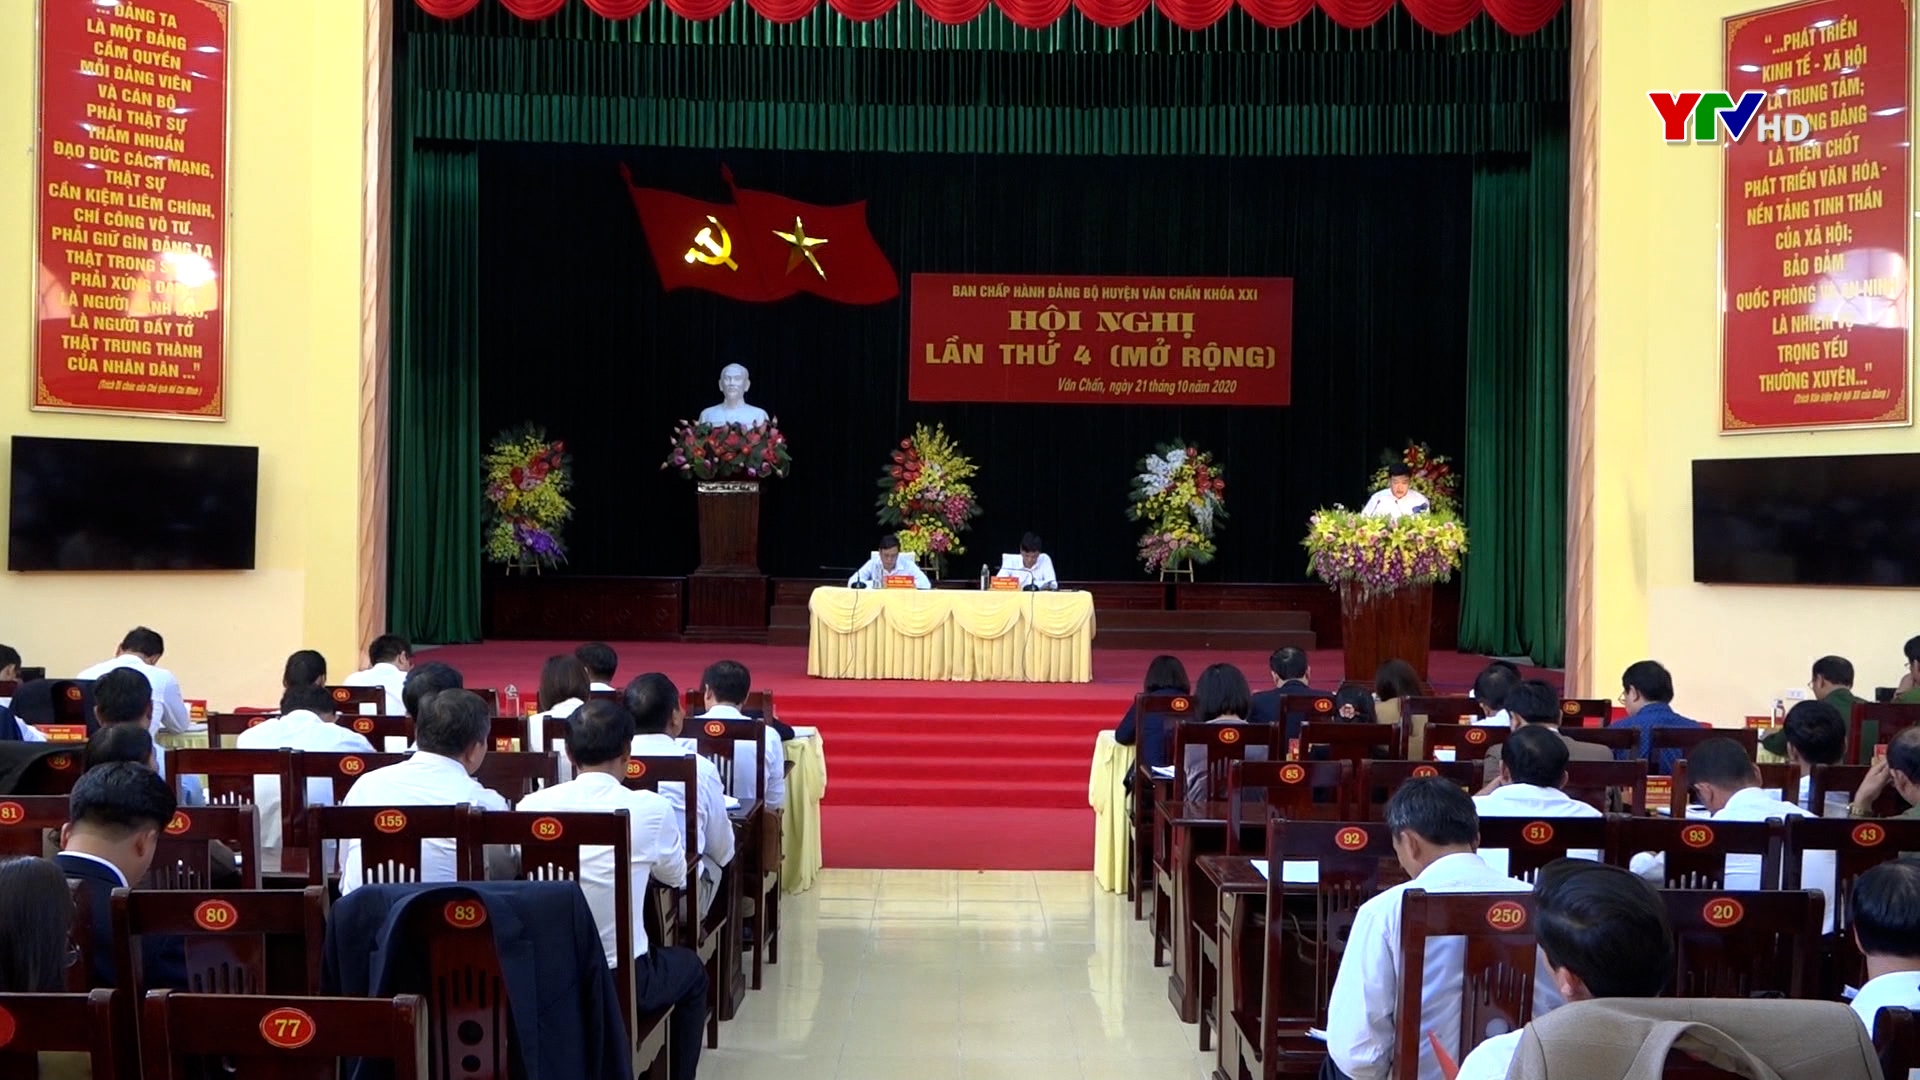 Hội nghị Ban Chấp hành Đảng bộ huyện Văn Chấn lần thứ 4  (mở rộng)